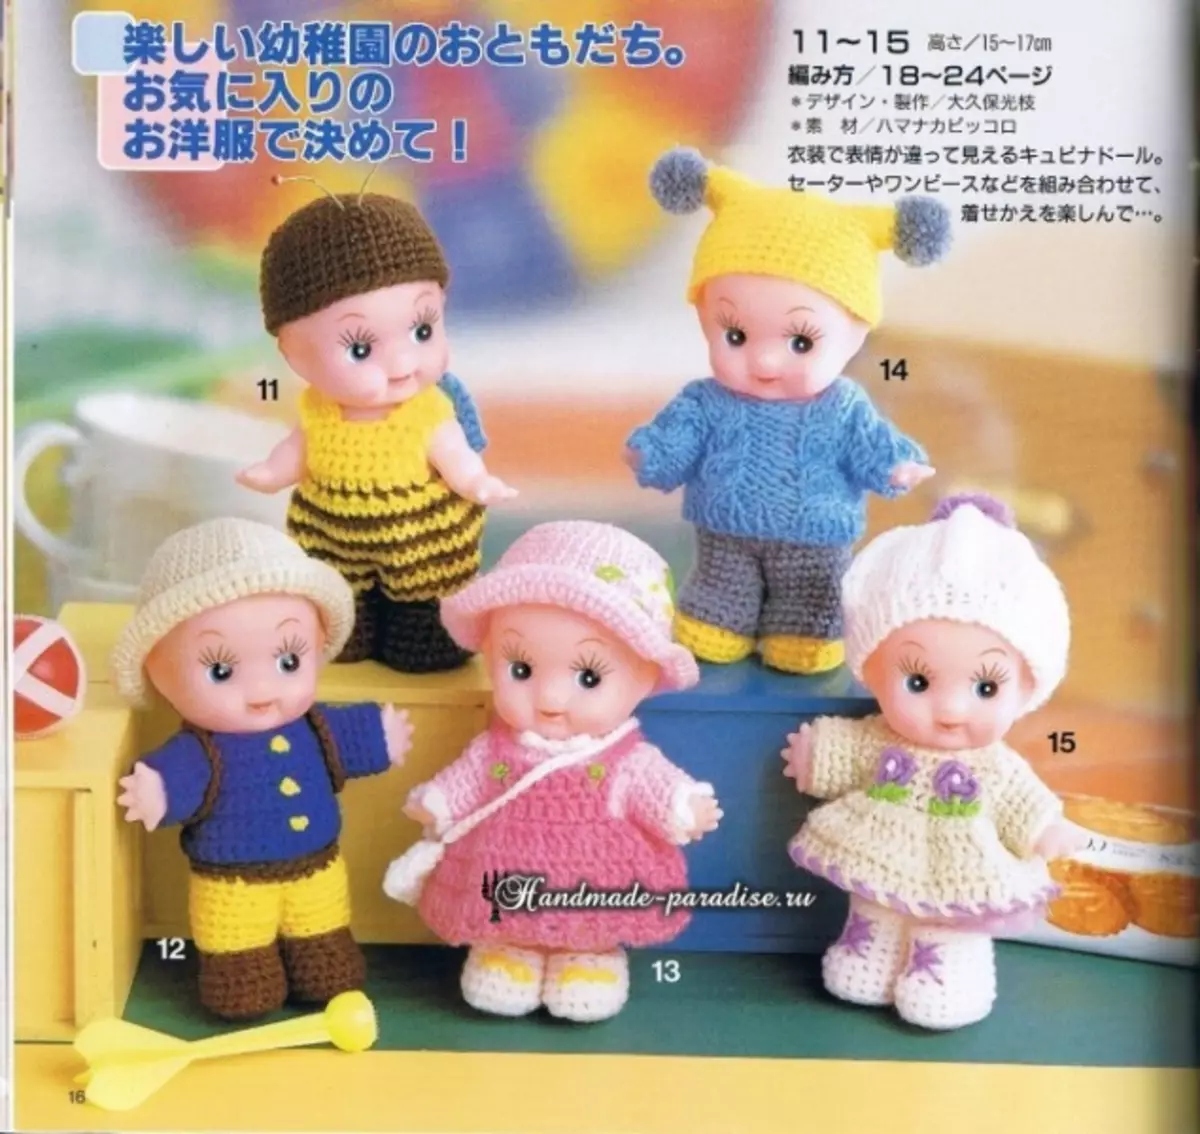 लहान बाहुल्यांसाठी कपडे घातलेले कपडे. योजना